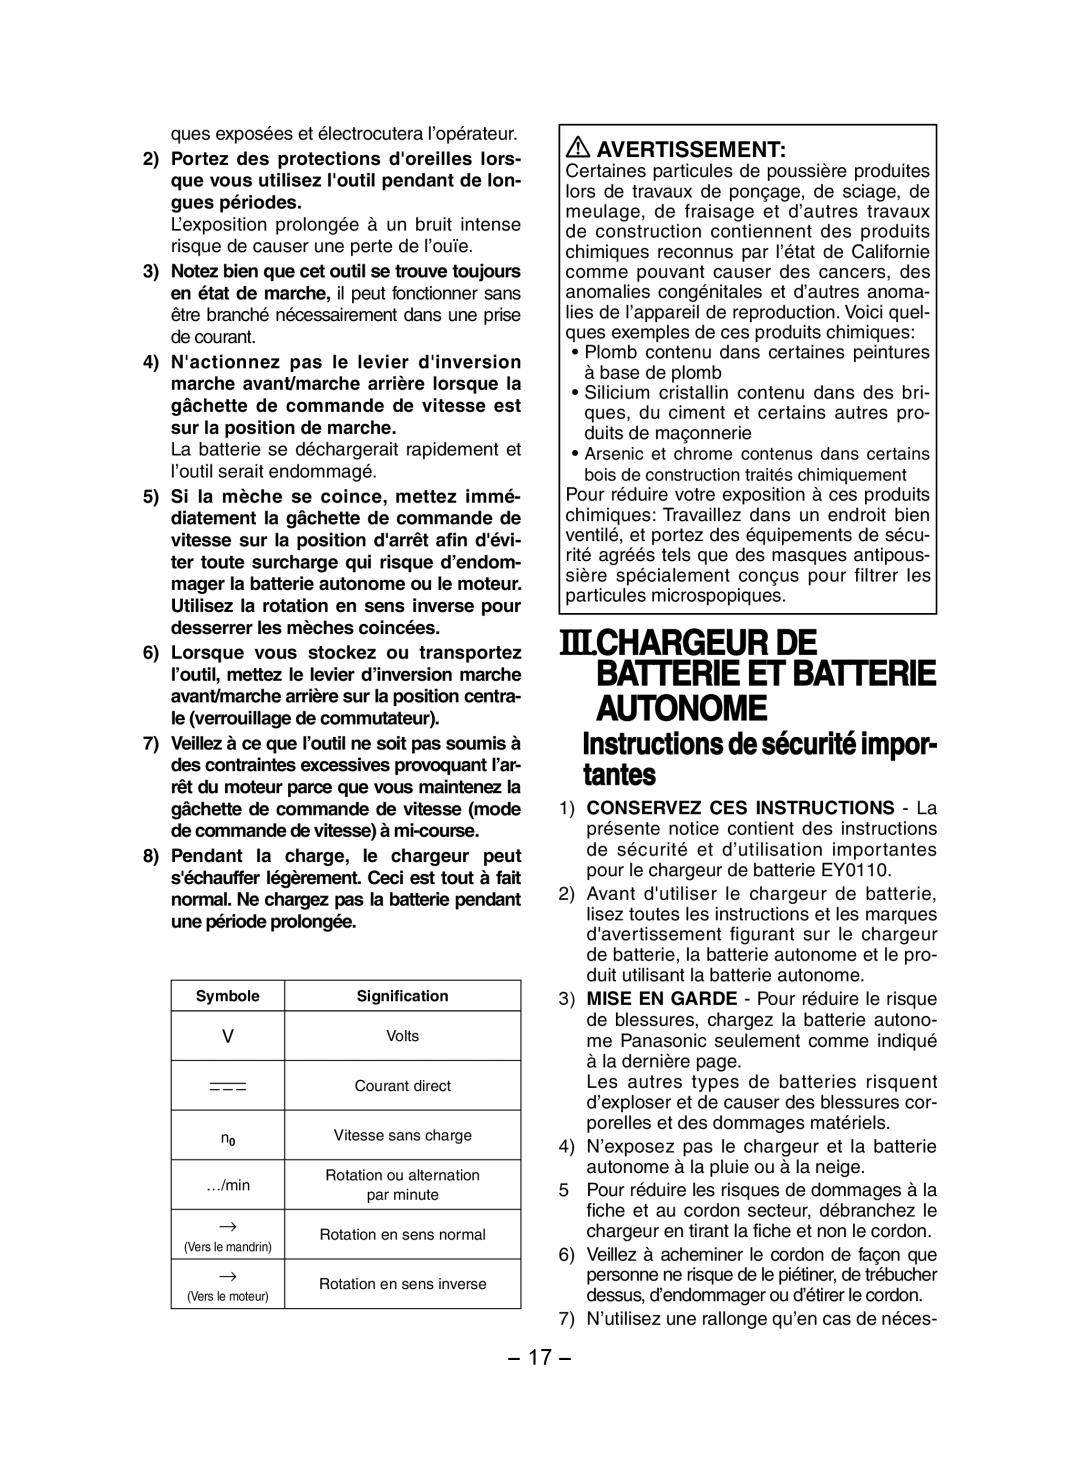 Panasonic EY7202 Iii.Chargeur De, Instructions de sécurité impor - tantes, Batterie Et Batterie Autonome, Avertissement 